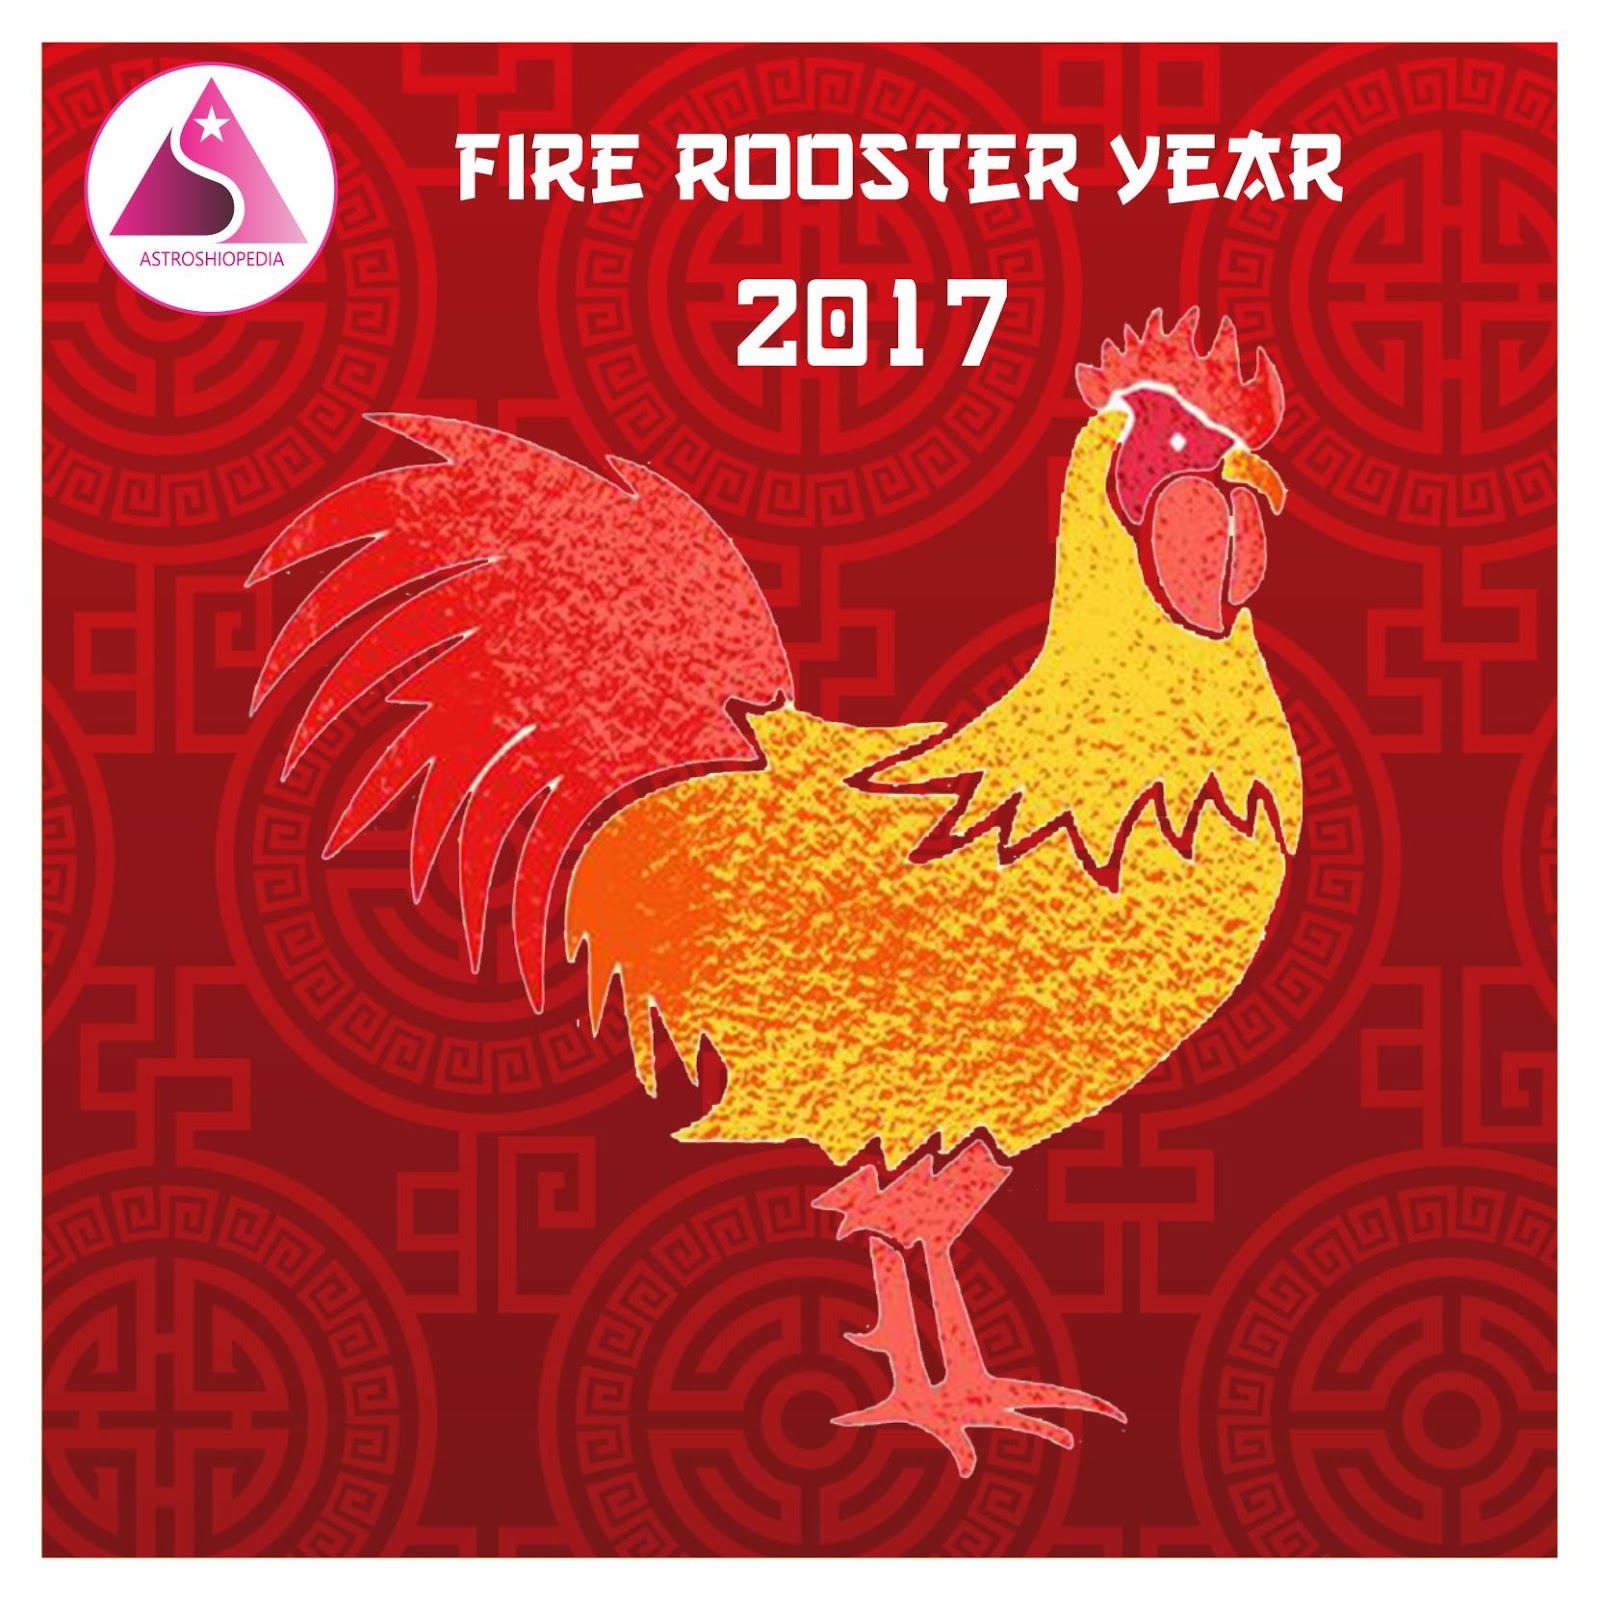 Ramalan Shio Ayam Api Tahun 2017